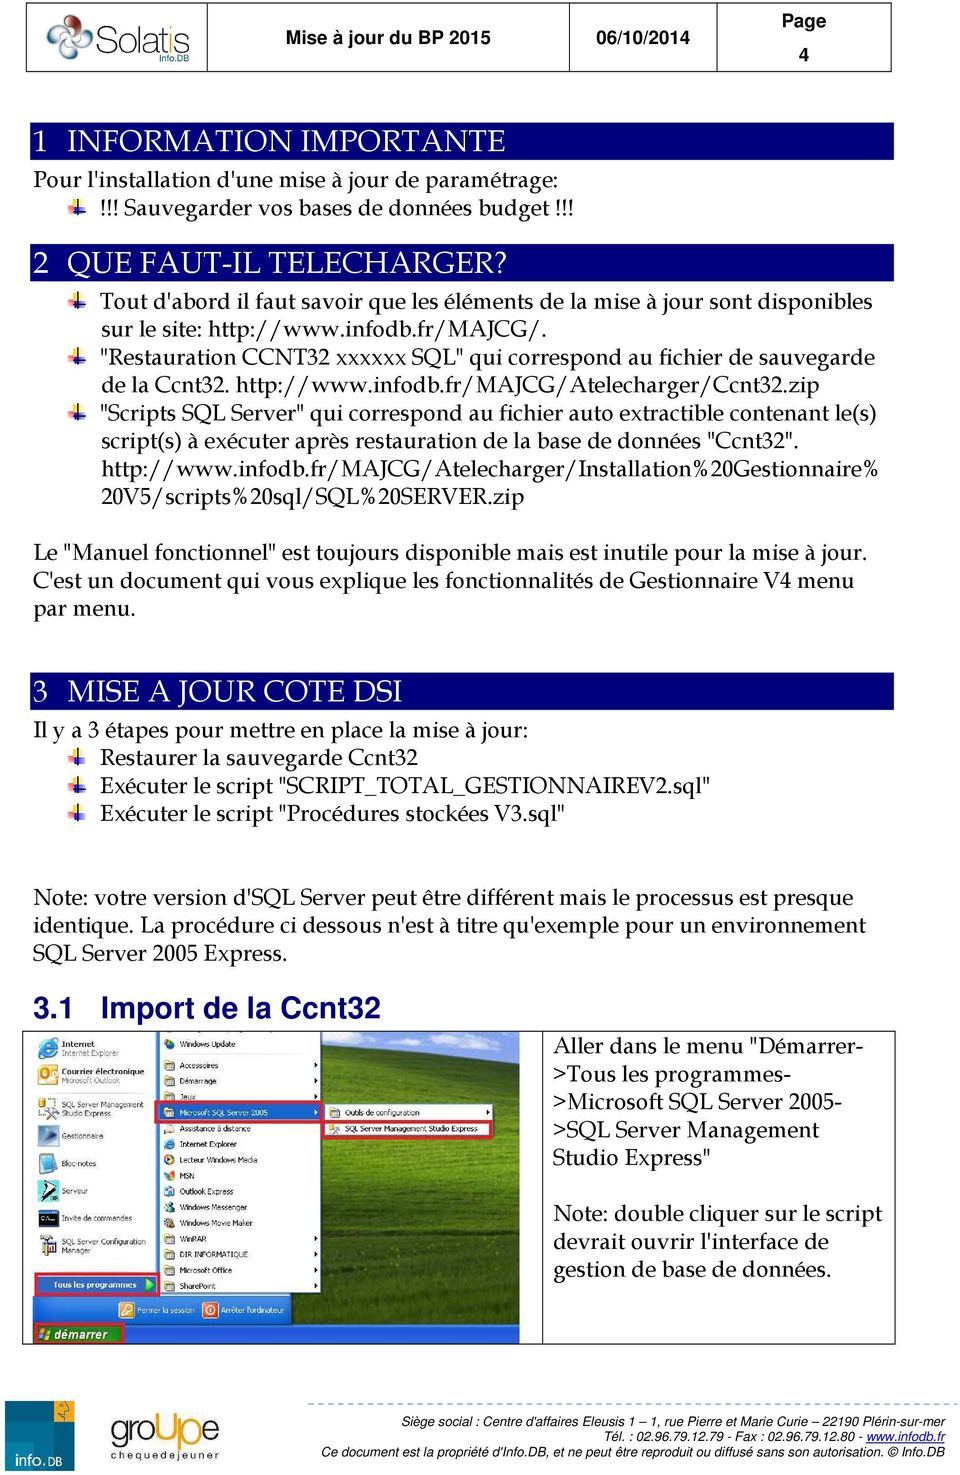 "Restauration CCNT32 xxxxxx SQL" qui correspond au fichier de sauvegarde de la Ccnt32. http://www.infodb.fr/majcg/atelecharger/ccnt32.